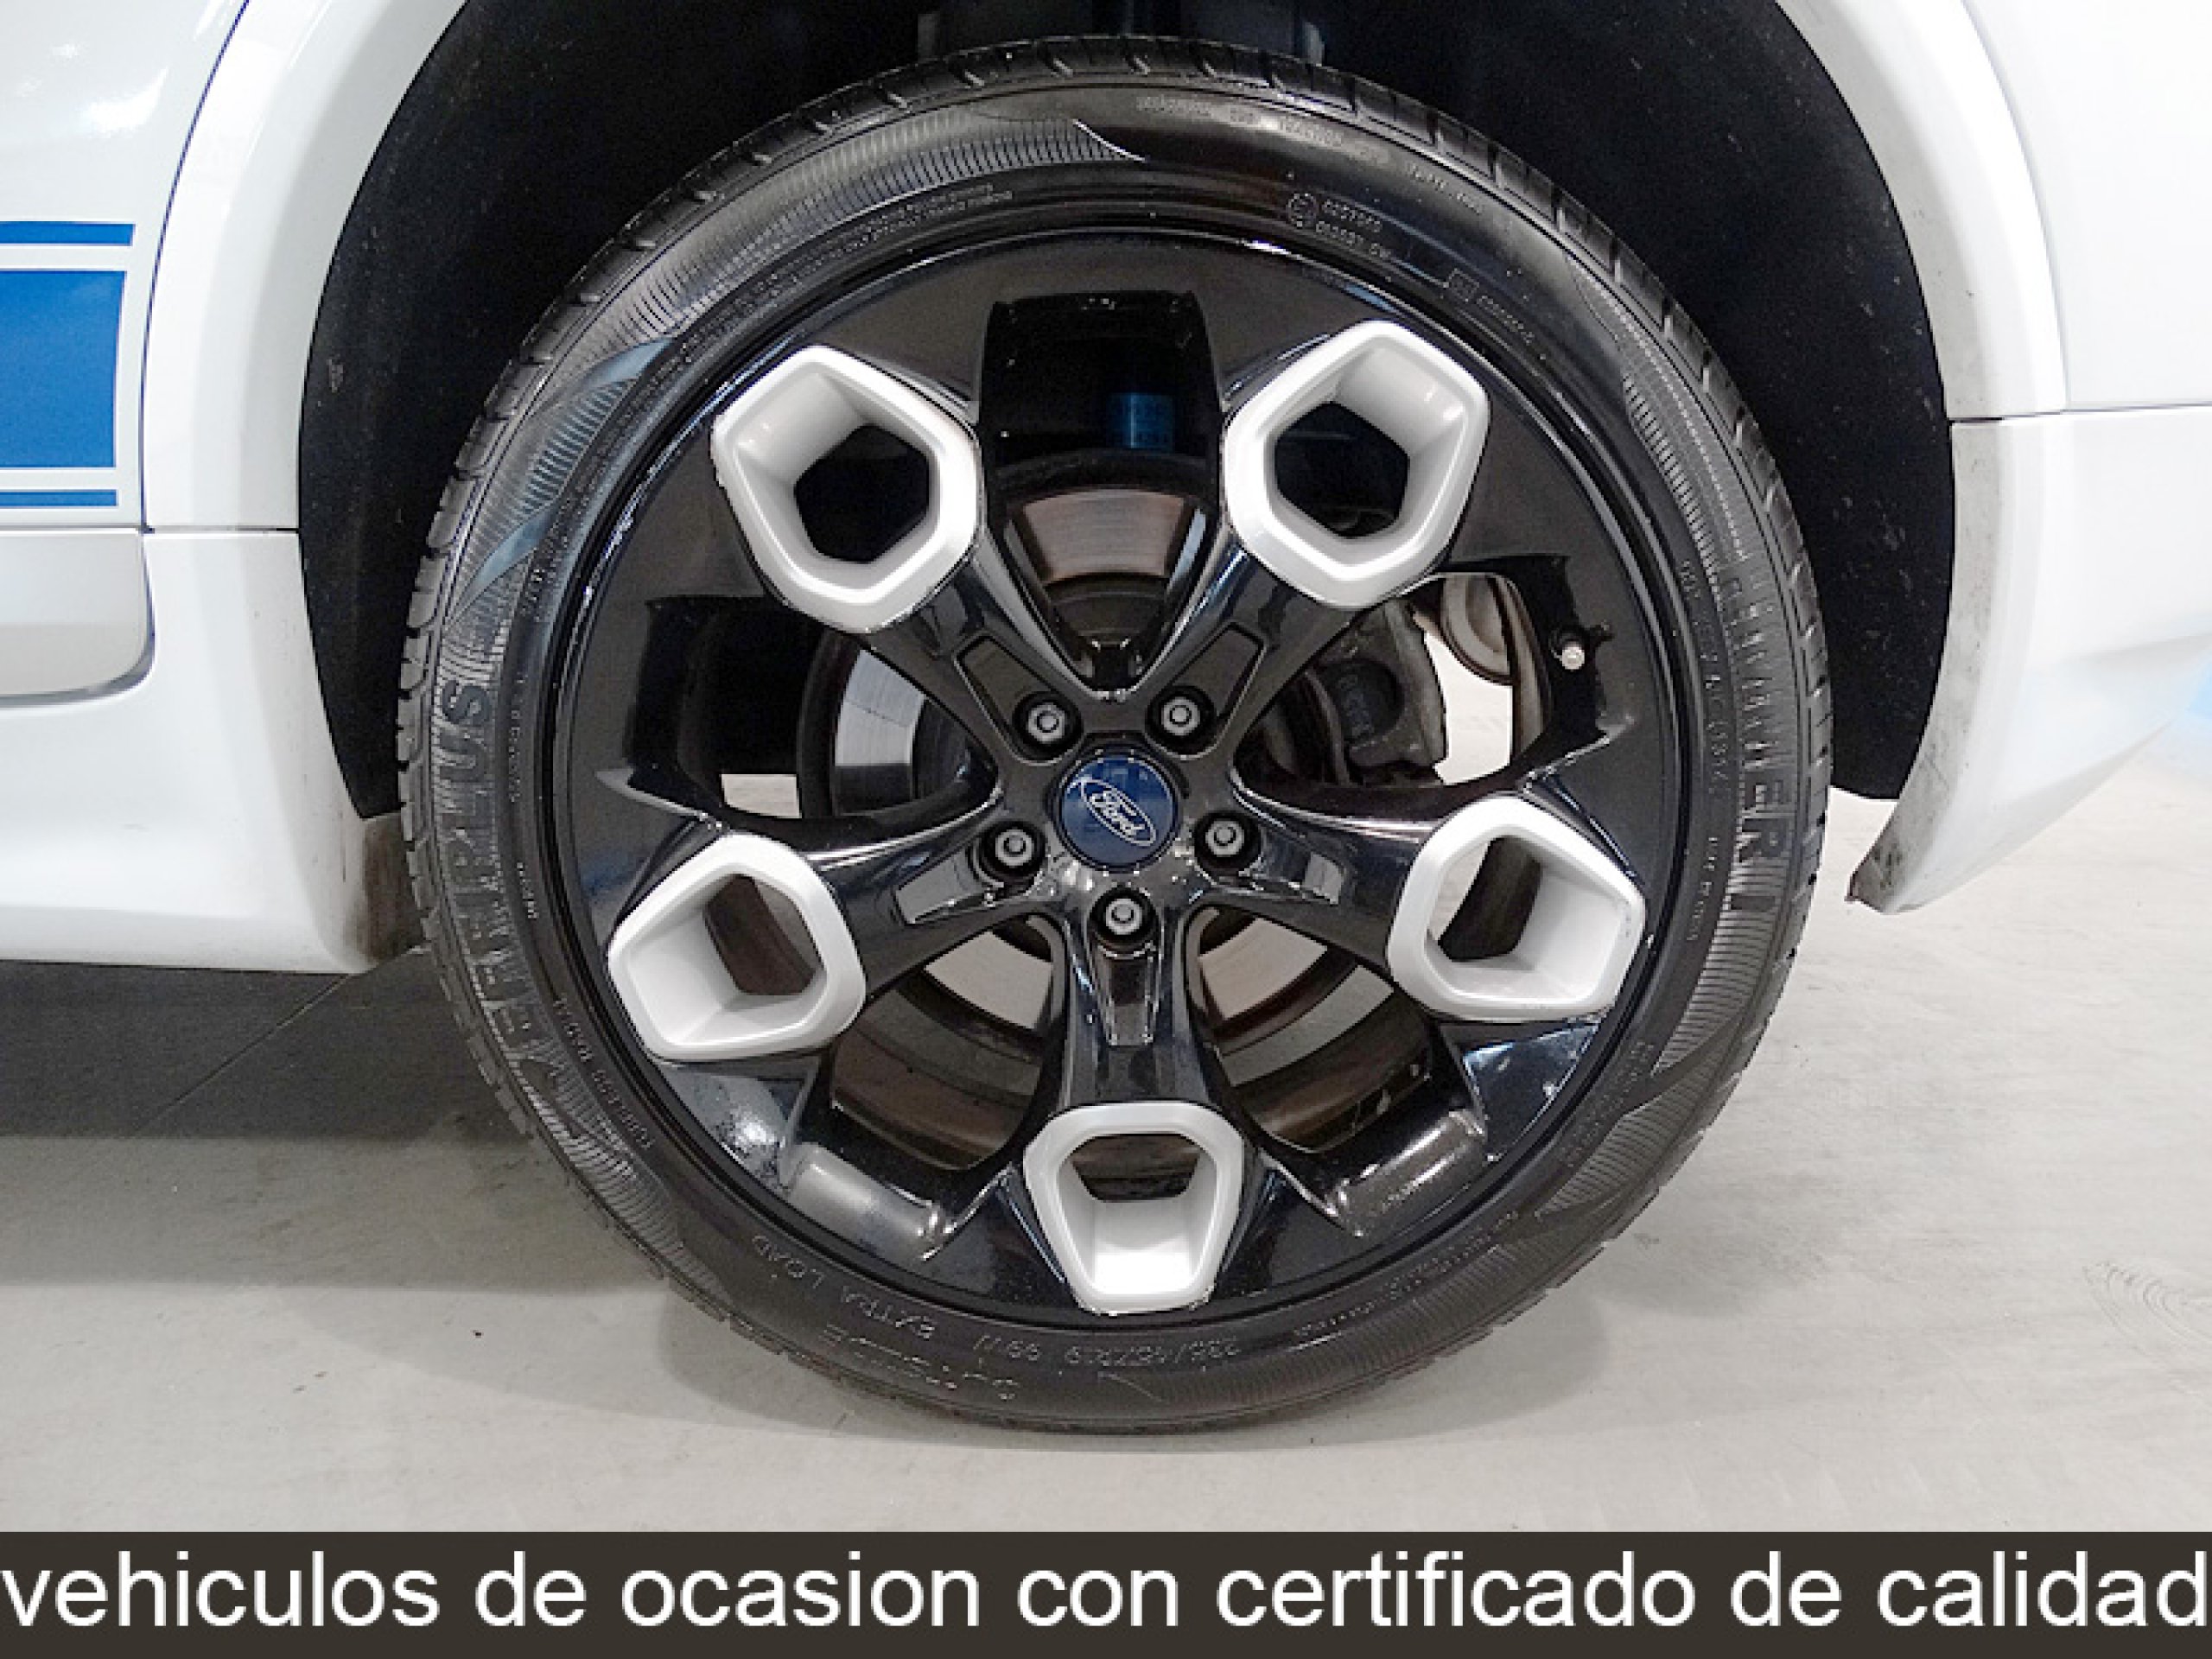 Oferta de Ford Kuga 2.0 TDCi Baqueira Beret 4WD 140CV en Canalcar